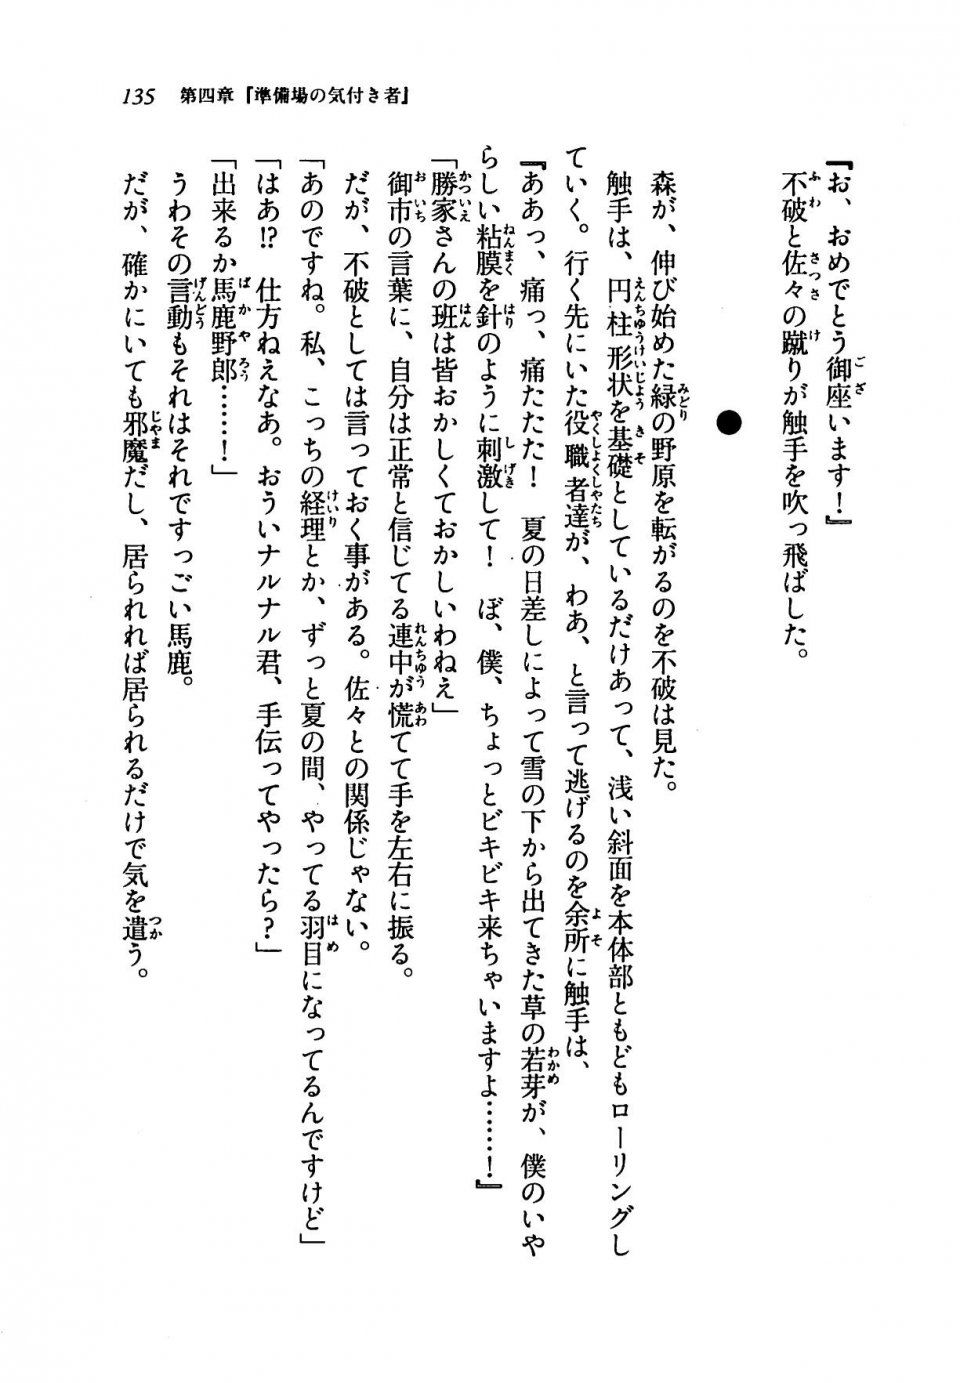 Kyoukai Senjou no Horizon LN Vol 19(8A) - Photo #135